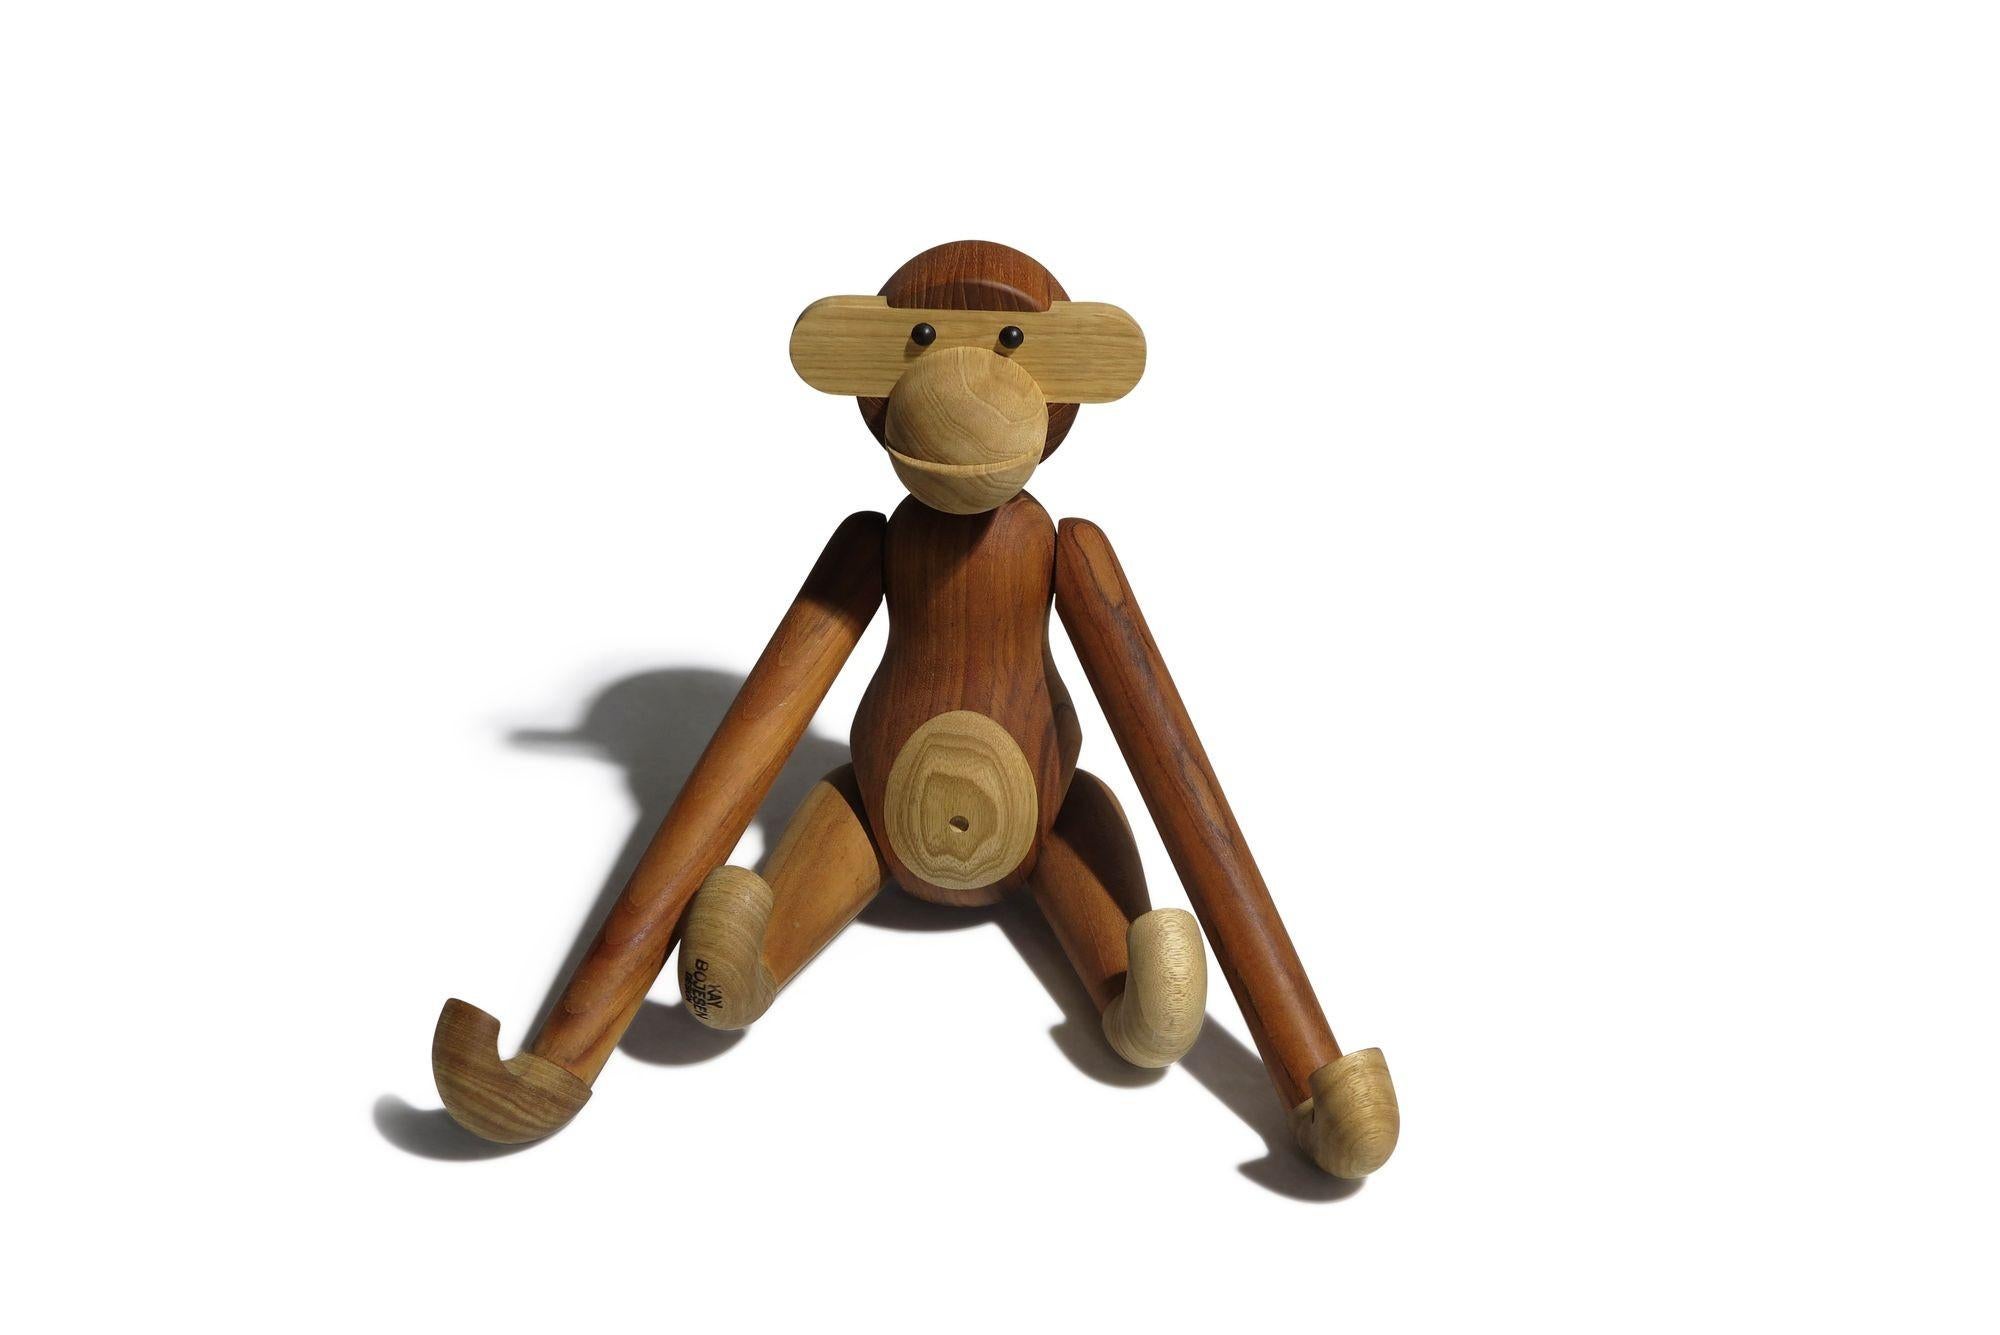 Grand singe de Kaye, conçu en 1951, Danemark. Sculptée en bois massif de teck et de limba. Il comporte des membres segmentés, des têtes, des bras et des jambes mobiles. Estampillé.

Dimensions : Corps 18